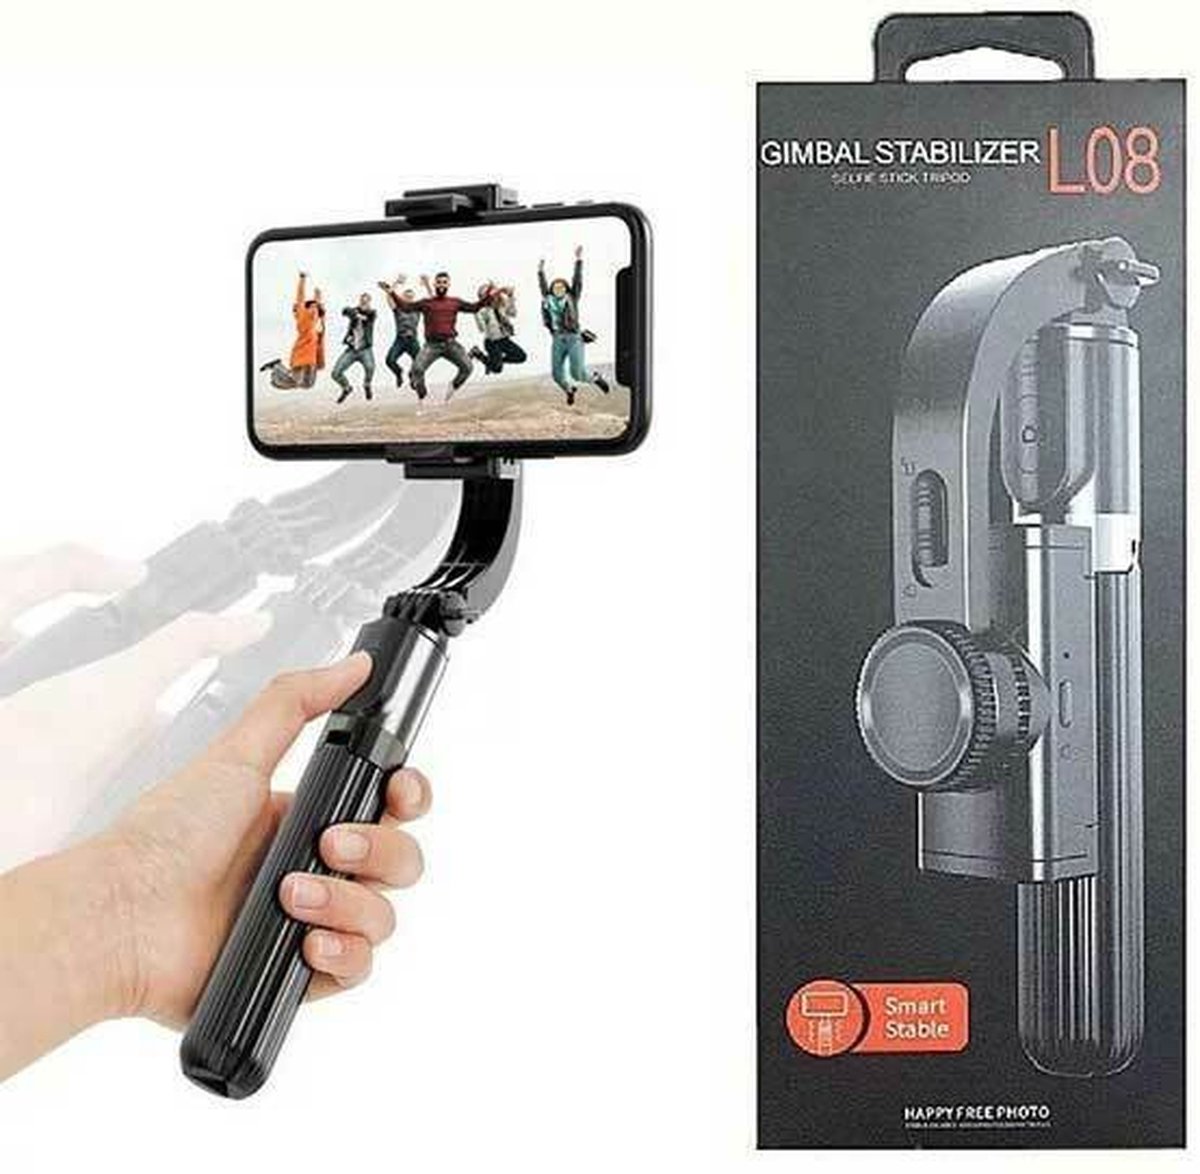 L08 Stabilisator voor mobiele telefoons Anti-Shake Gimbal-stabilisator Selfie Stick-statief 3 in 1 met afstandsbediening Handheld Gimbal Video-opnamen maken Compatibel met iPhone IOS en Android